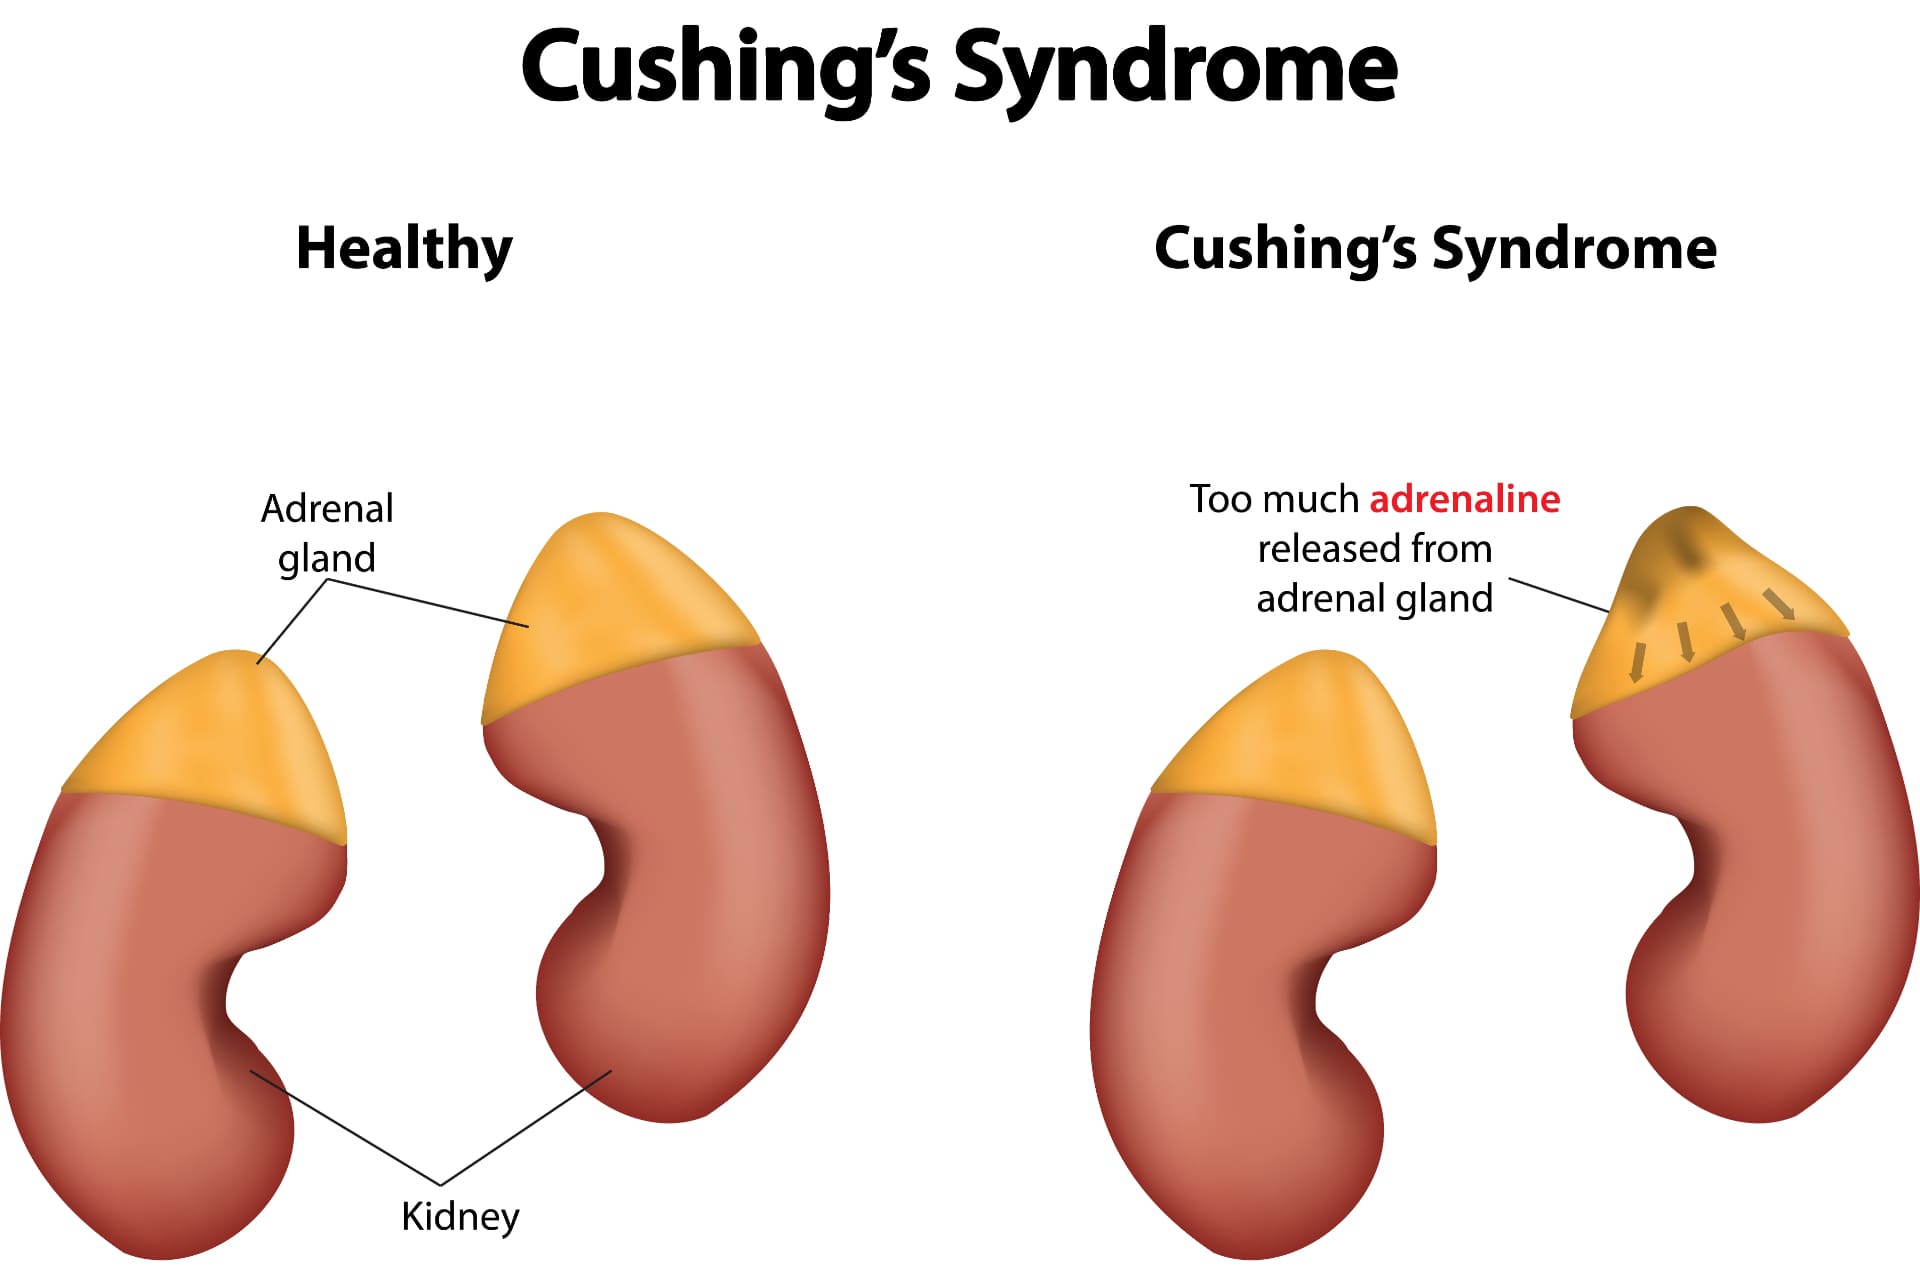 Cushing Sendromu